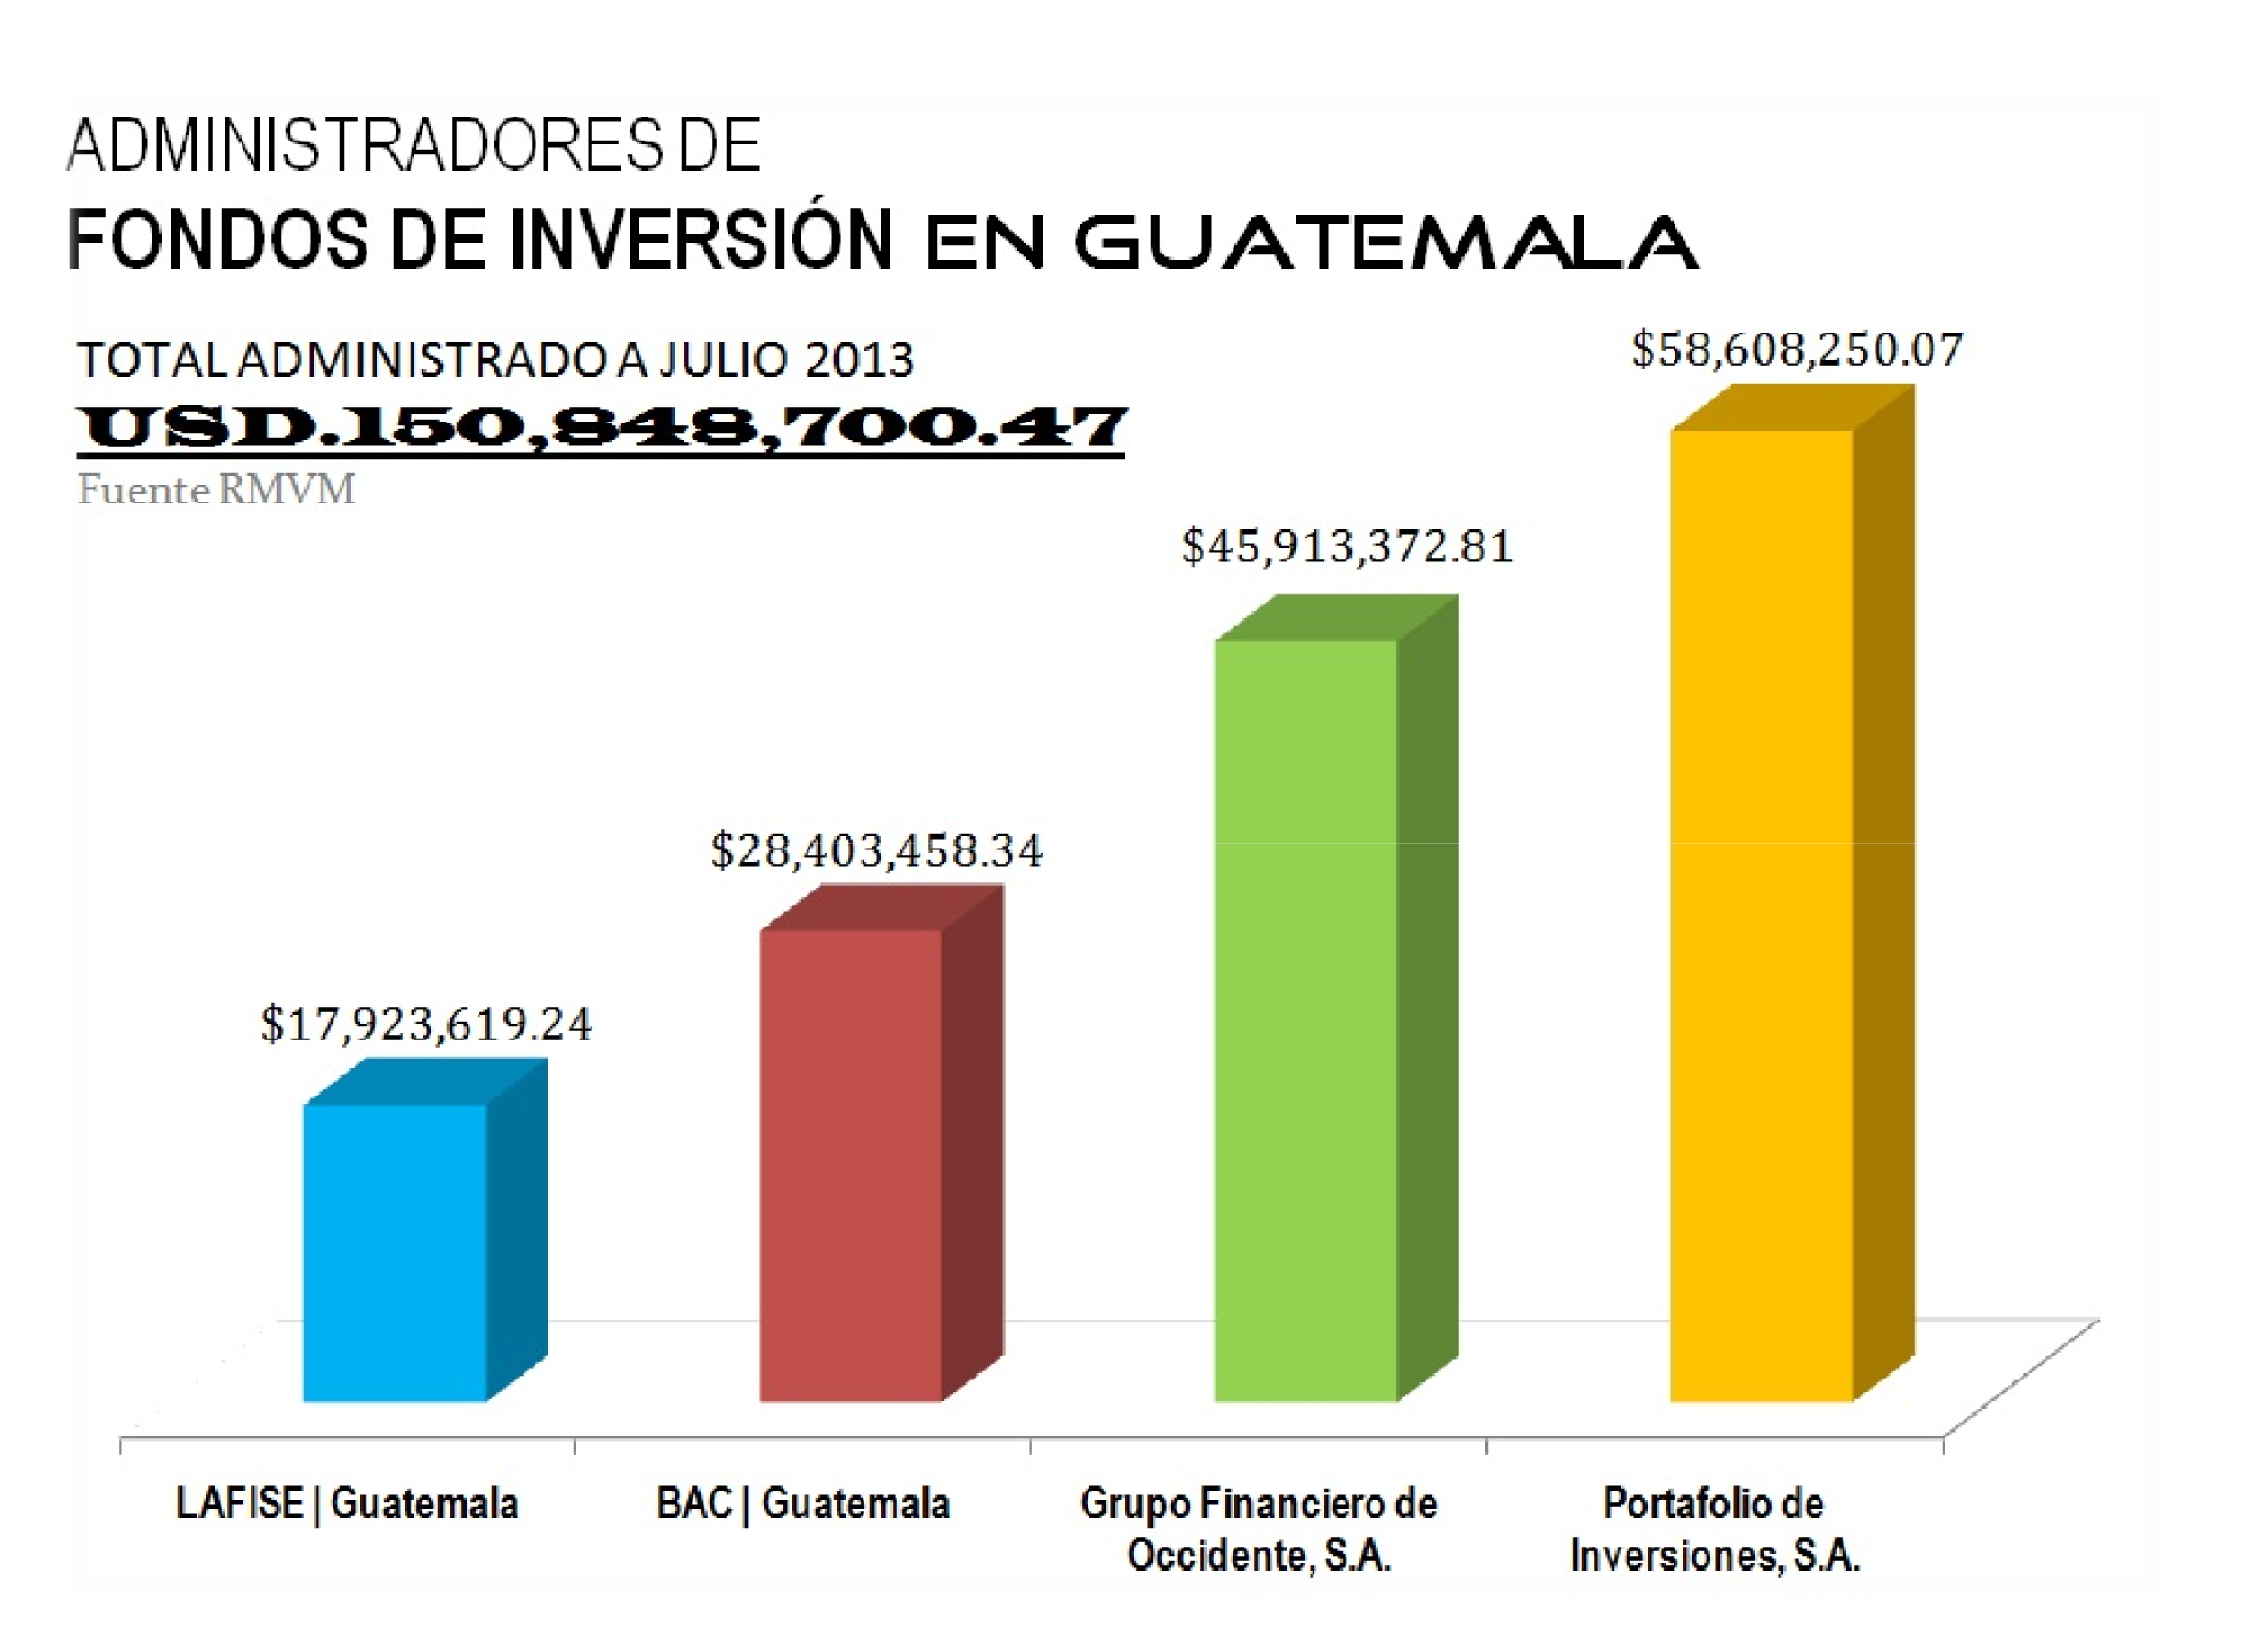 No. 56 CAFI Guatemala Existen tres alternativas para gestionar fondos colectivos. Primero, a través de agentes de bolsa, quienes pueden suscribir con sus clientes, contratos de fondos de inversión.